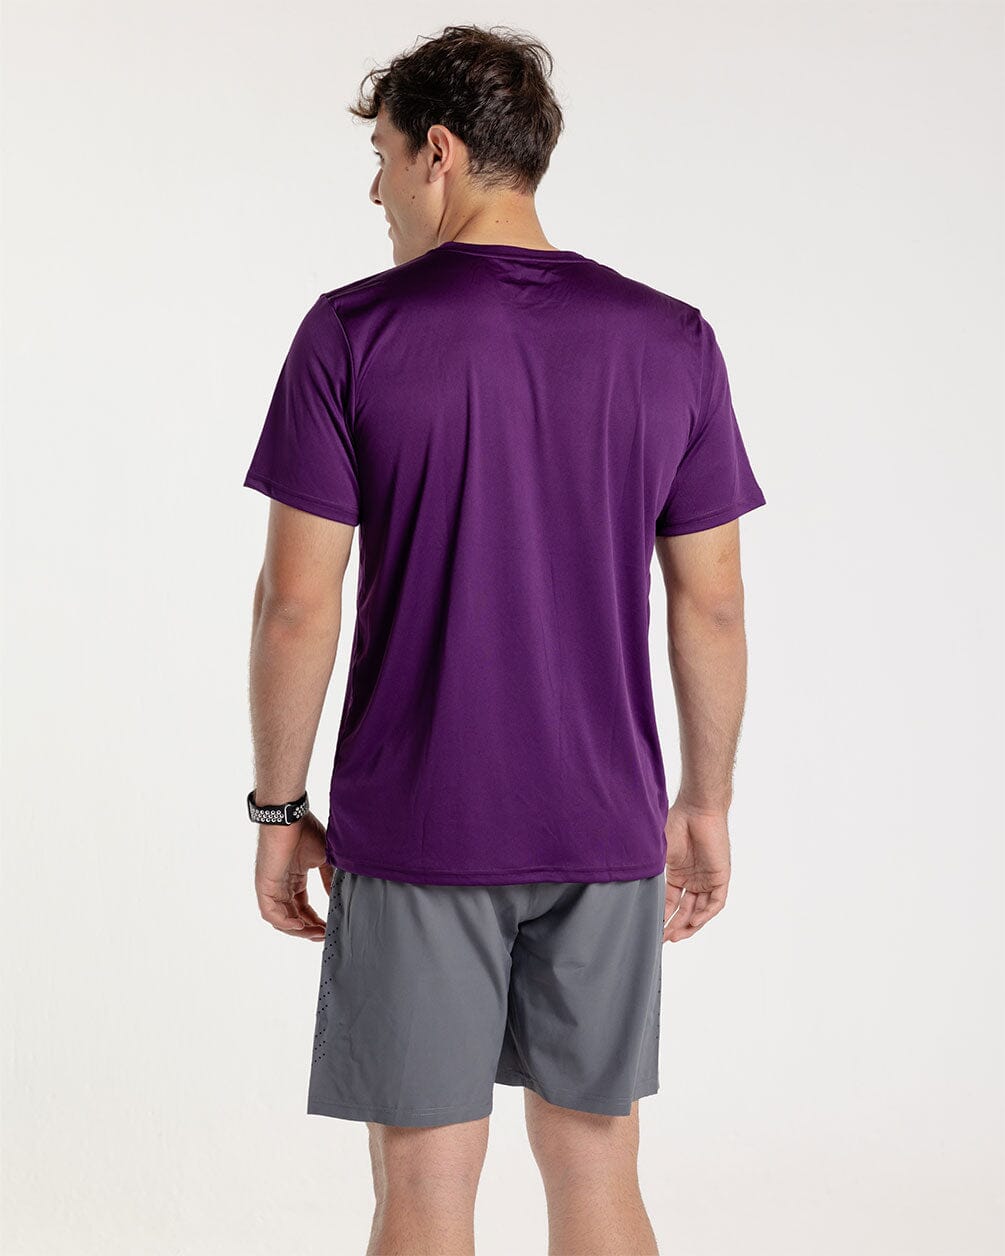 Purple Sportee Sportees IN YOUR SHOE XL 